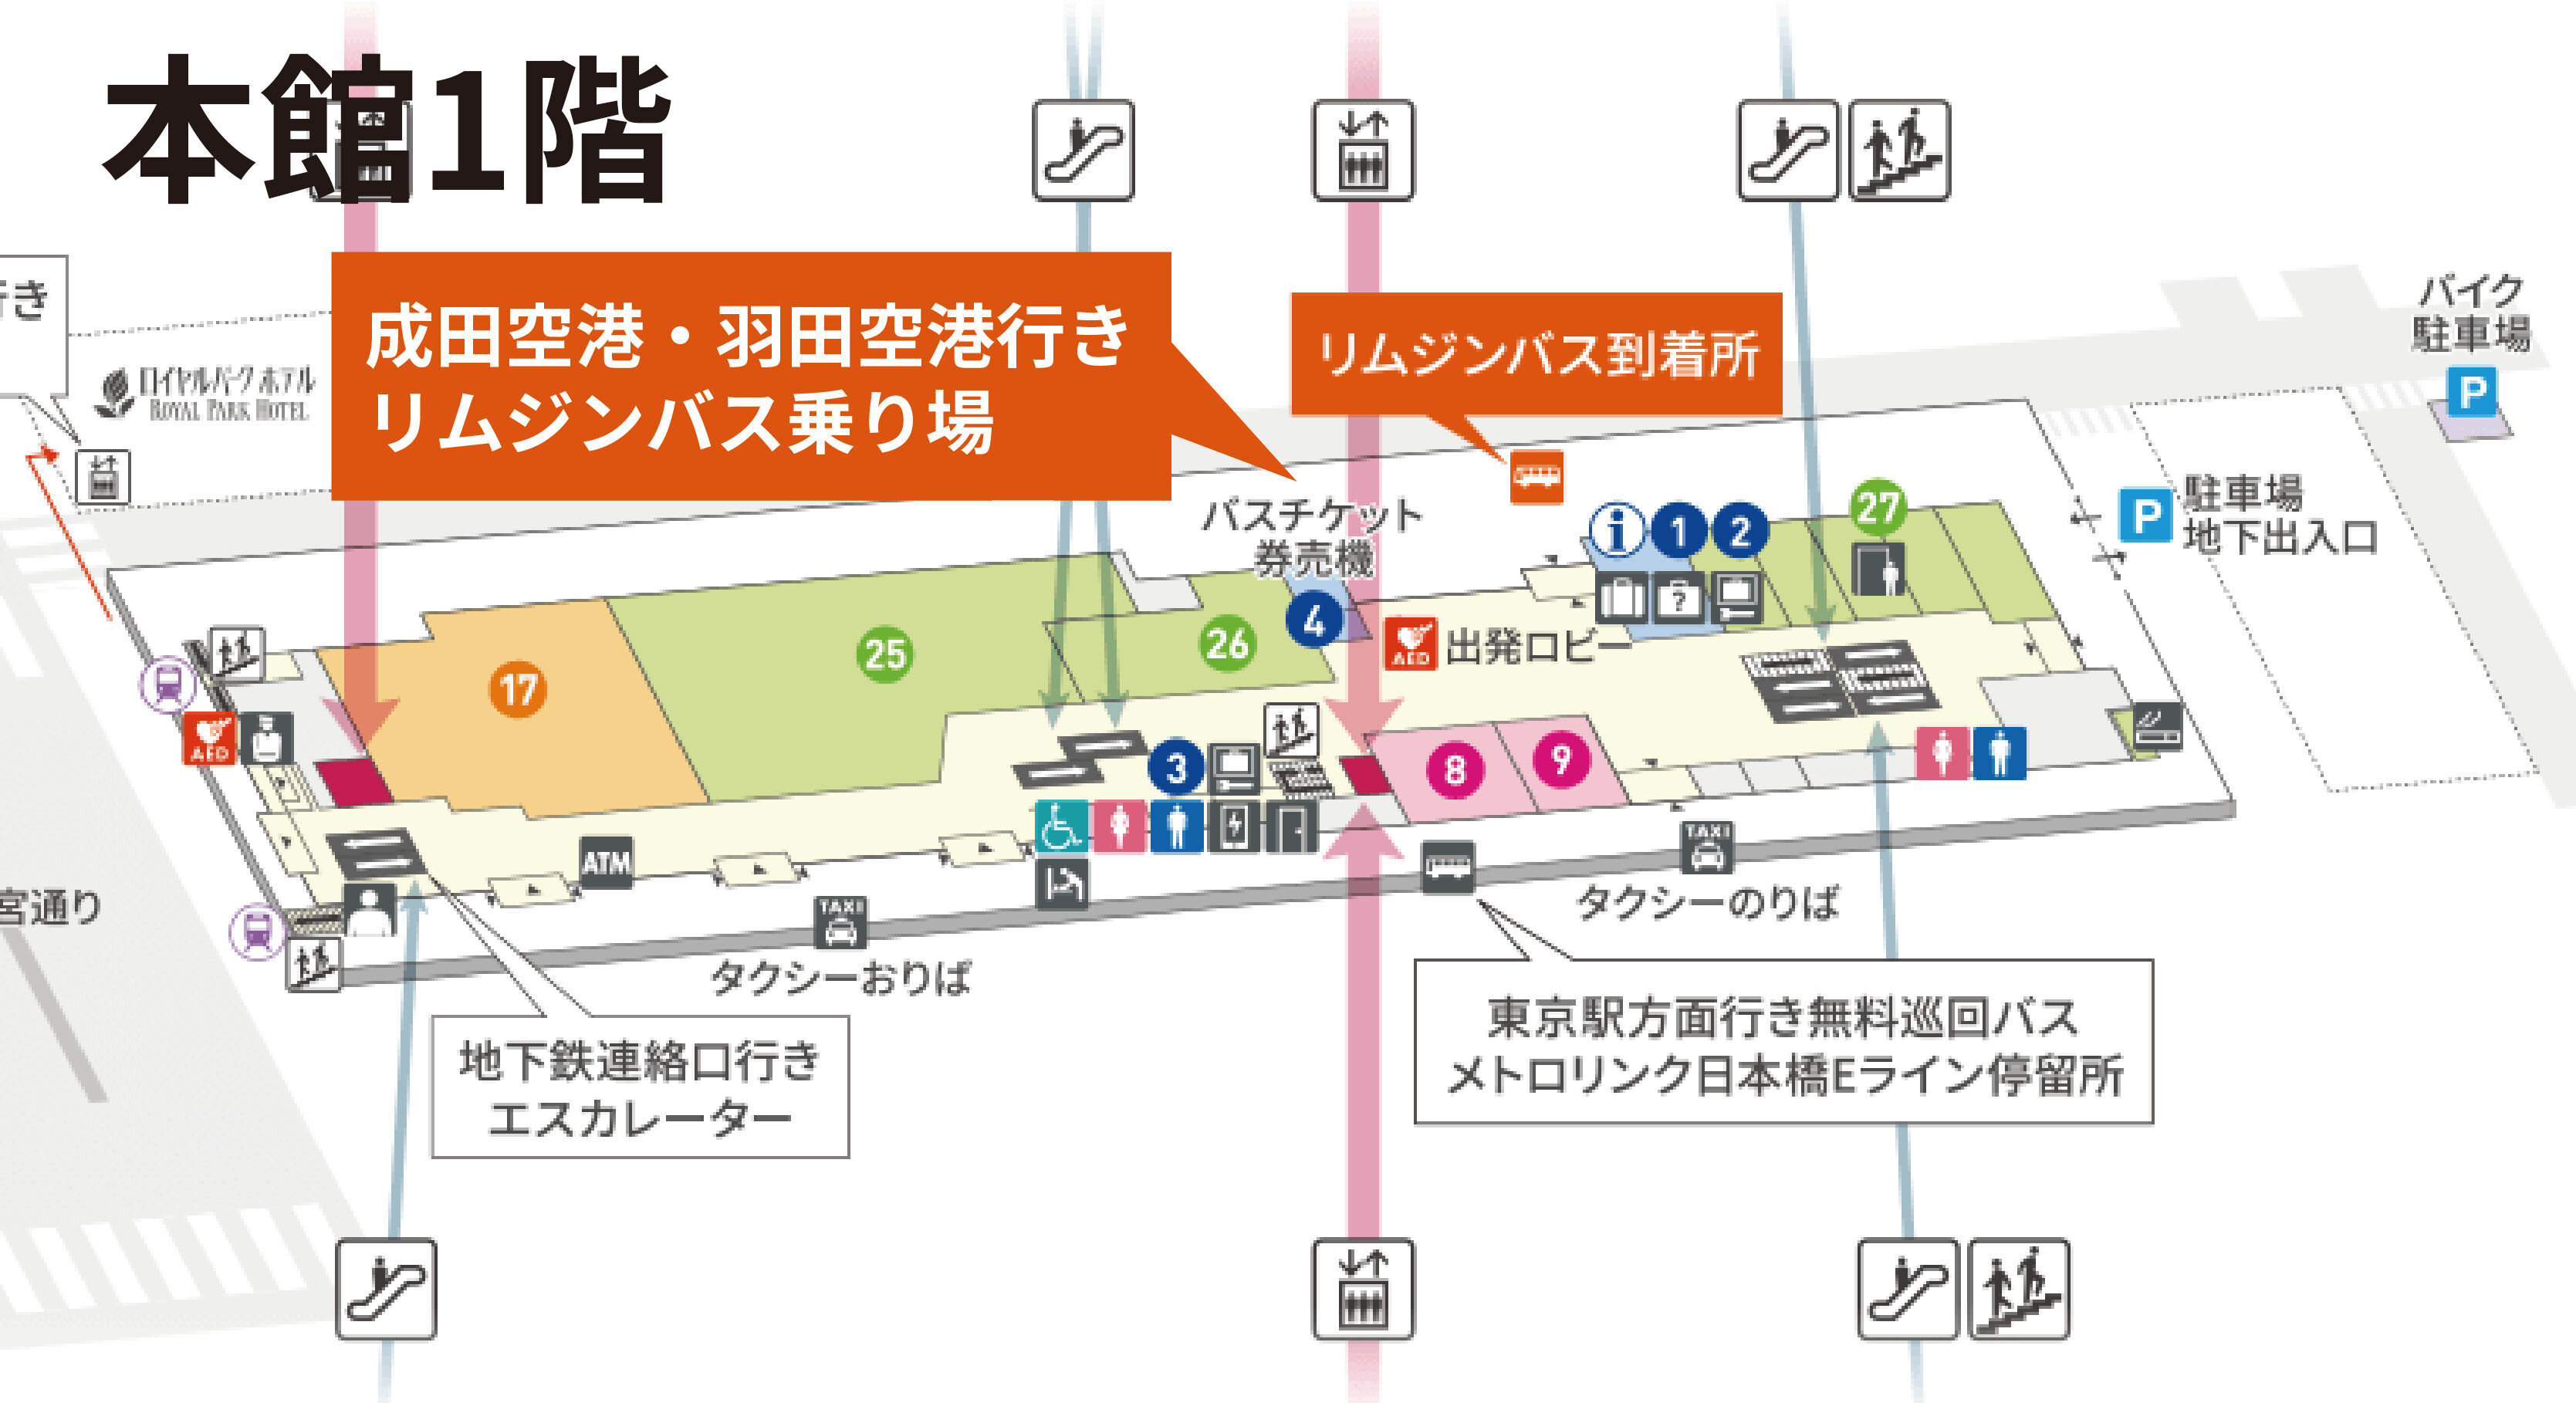 お知らせ 成田空港行きリムジンバス乗り場変更 本館3階 本館1階 のお知らせ 東京シティエアターミナル T Cat